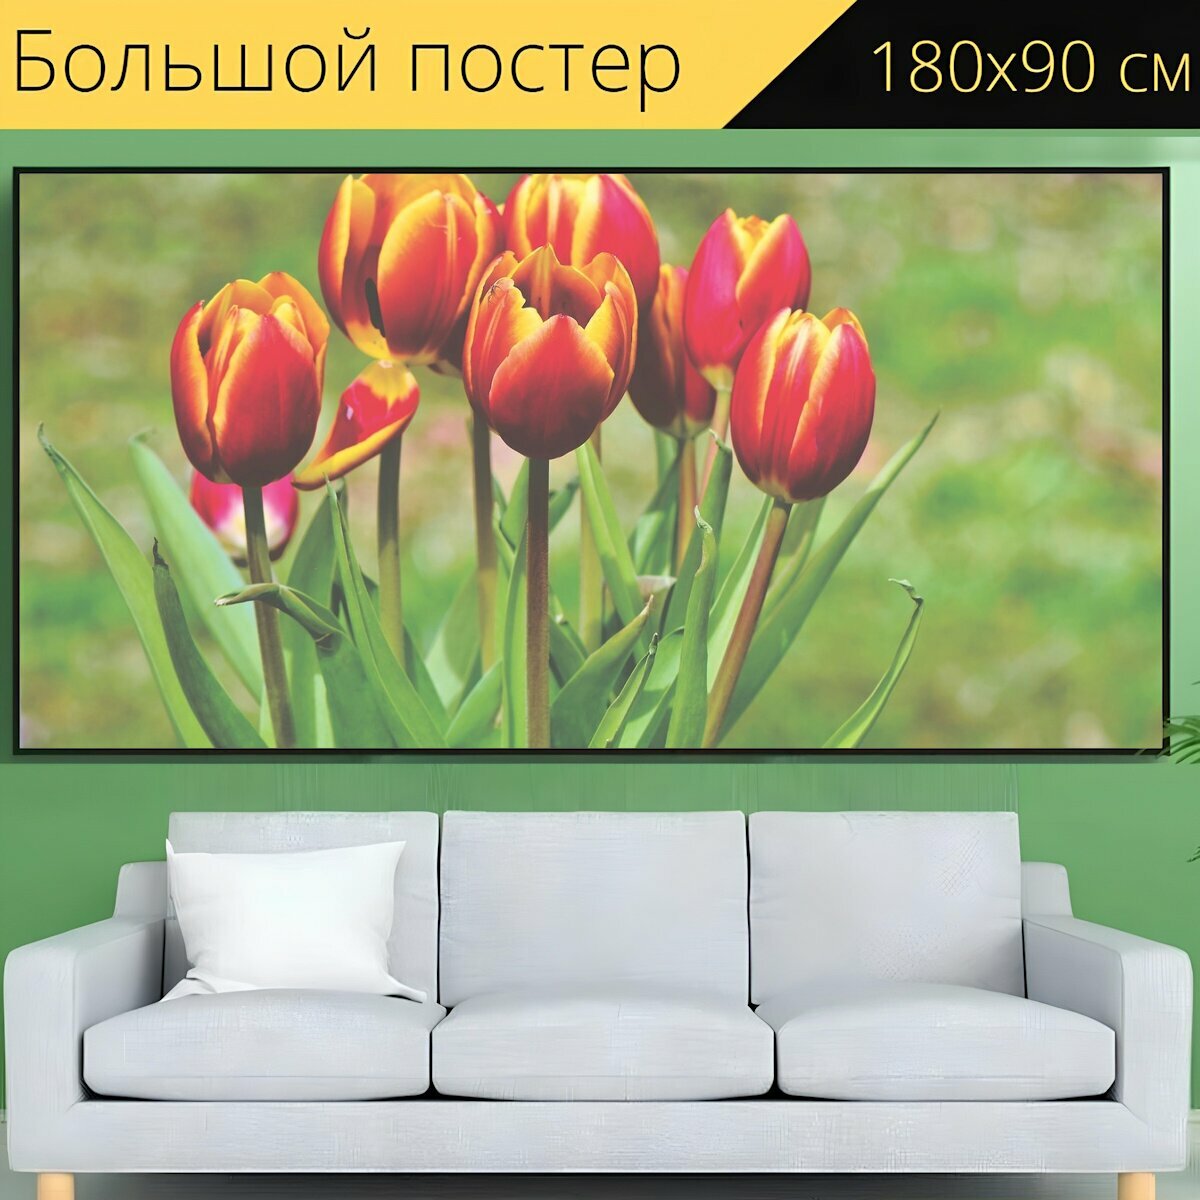 Большой постер "Тюльпан, букет тюльпанов, букет цветов" 180 x 90 см. для интерьера